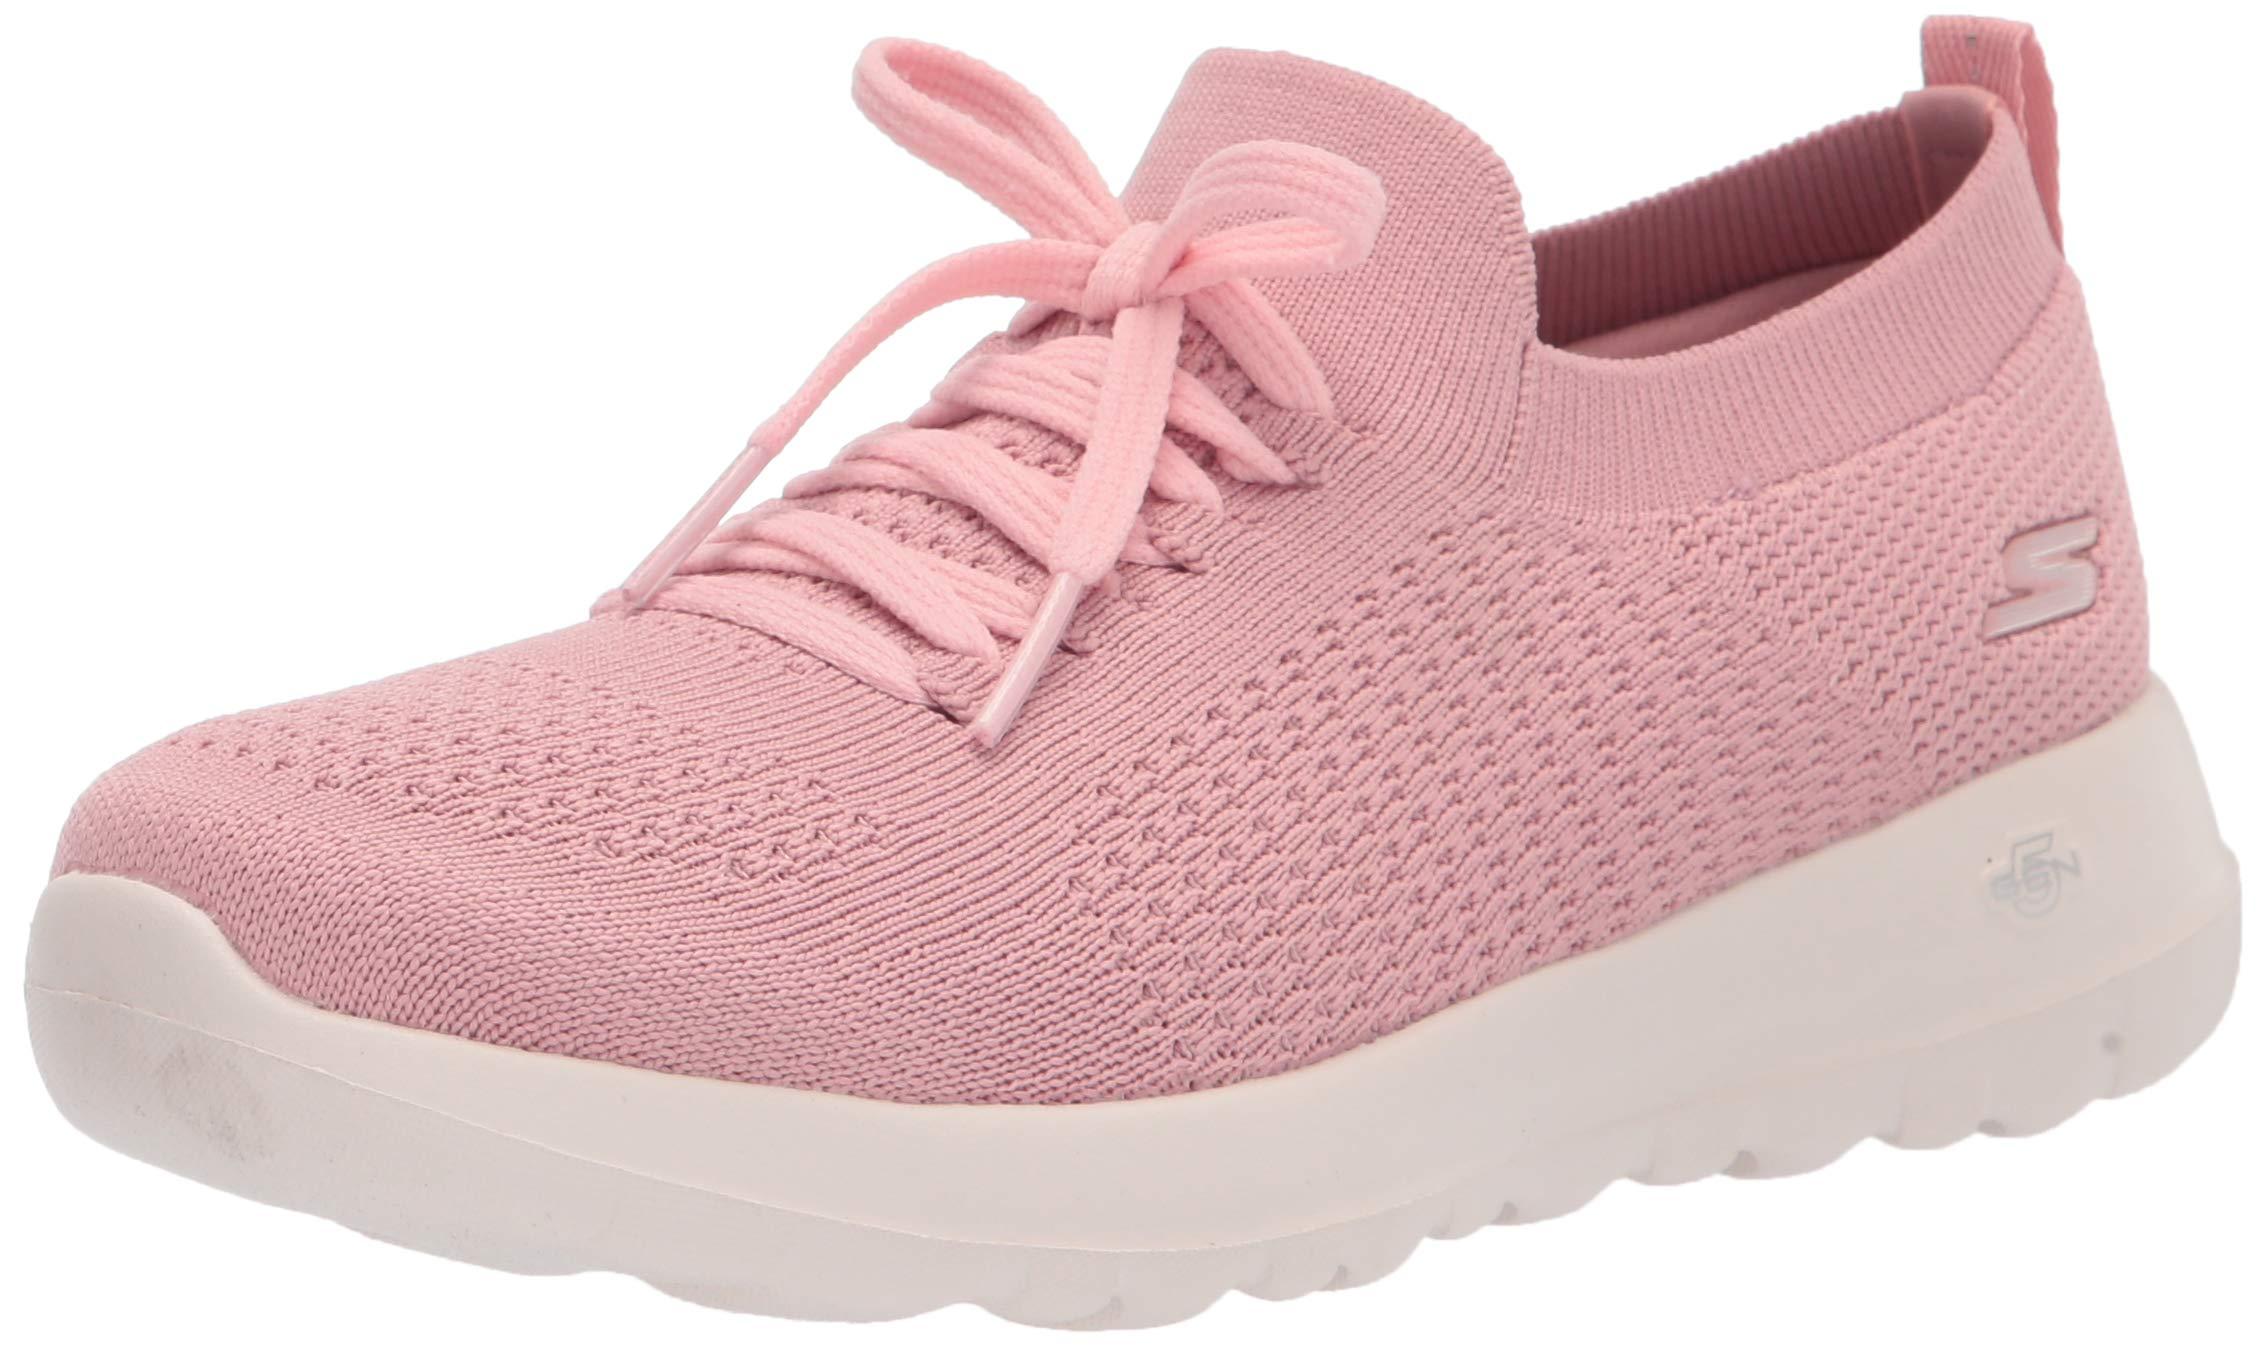 Skechers Womens Go Walk Joy Knit On With Laces Sneaker in Pink Lyst